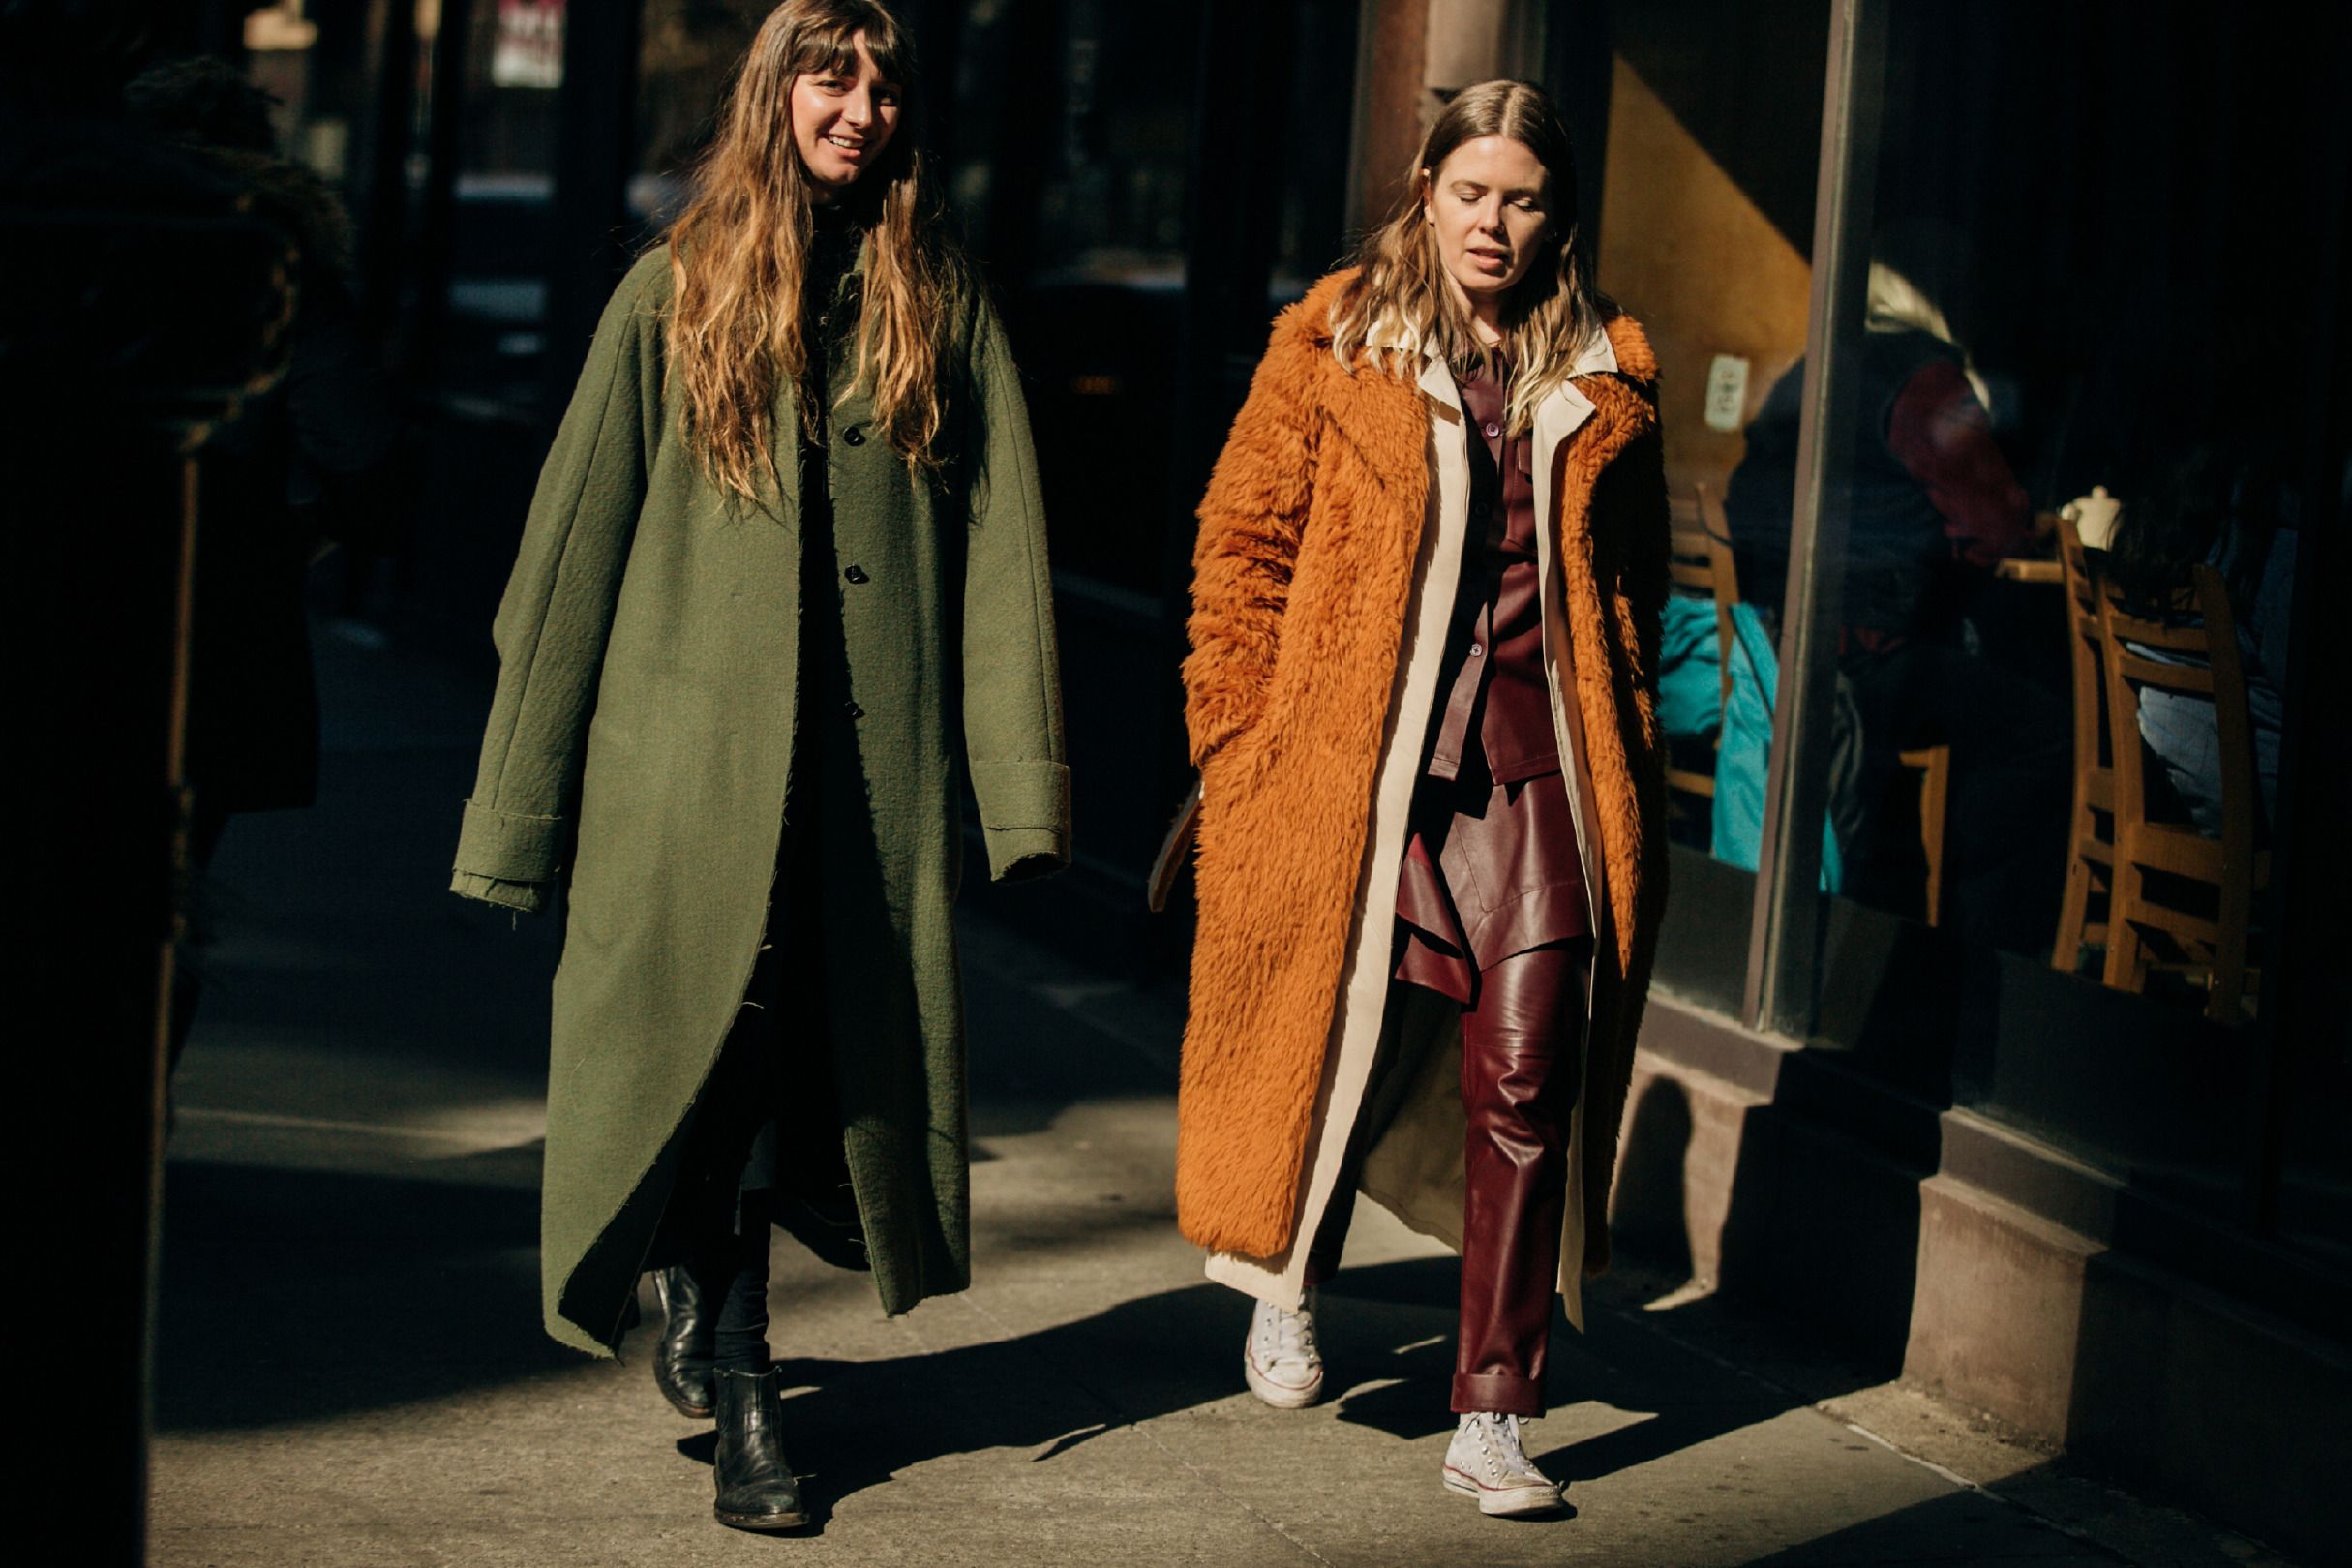 Sokak Stili: 2019-20 Sonbahar/Kış New York Moda Haftası 4. Gün